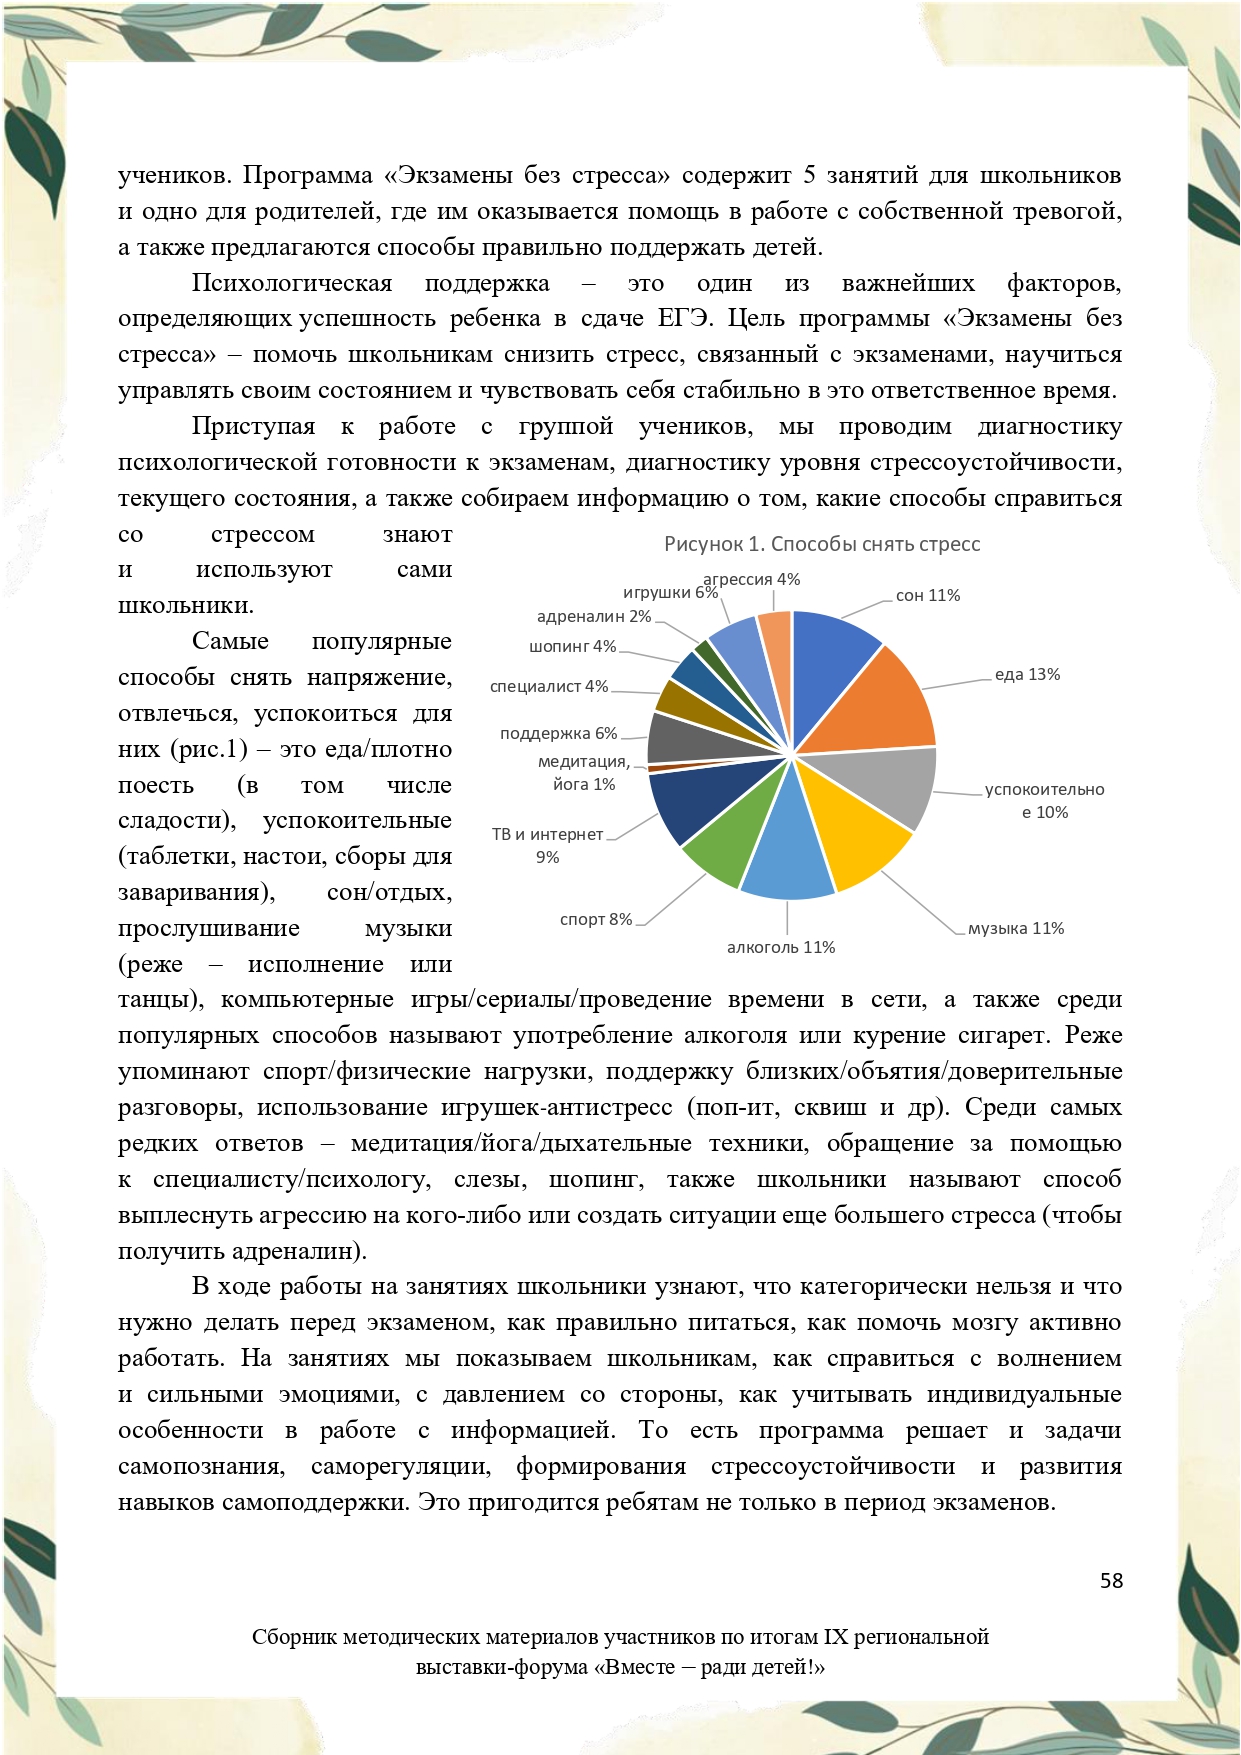 Sbornik_metodicheskikh_materialov_uchastnikov_IX_regionalnoy_vystavki-foruma_Vmeste__radi_detey_33__2023_page-0058